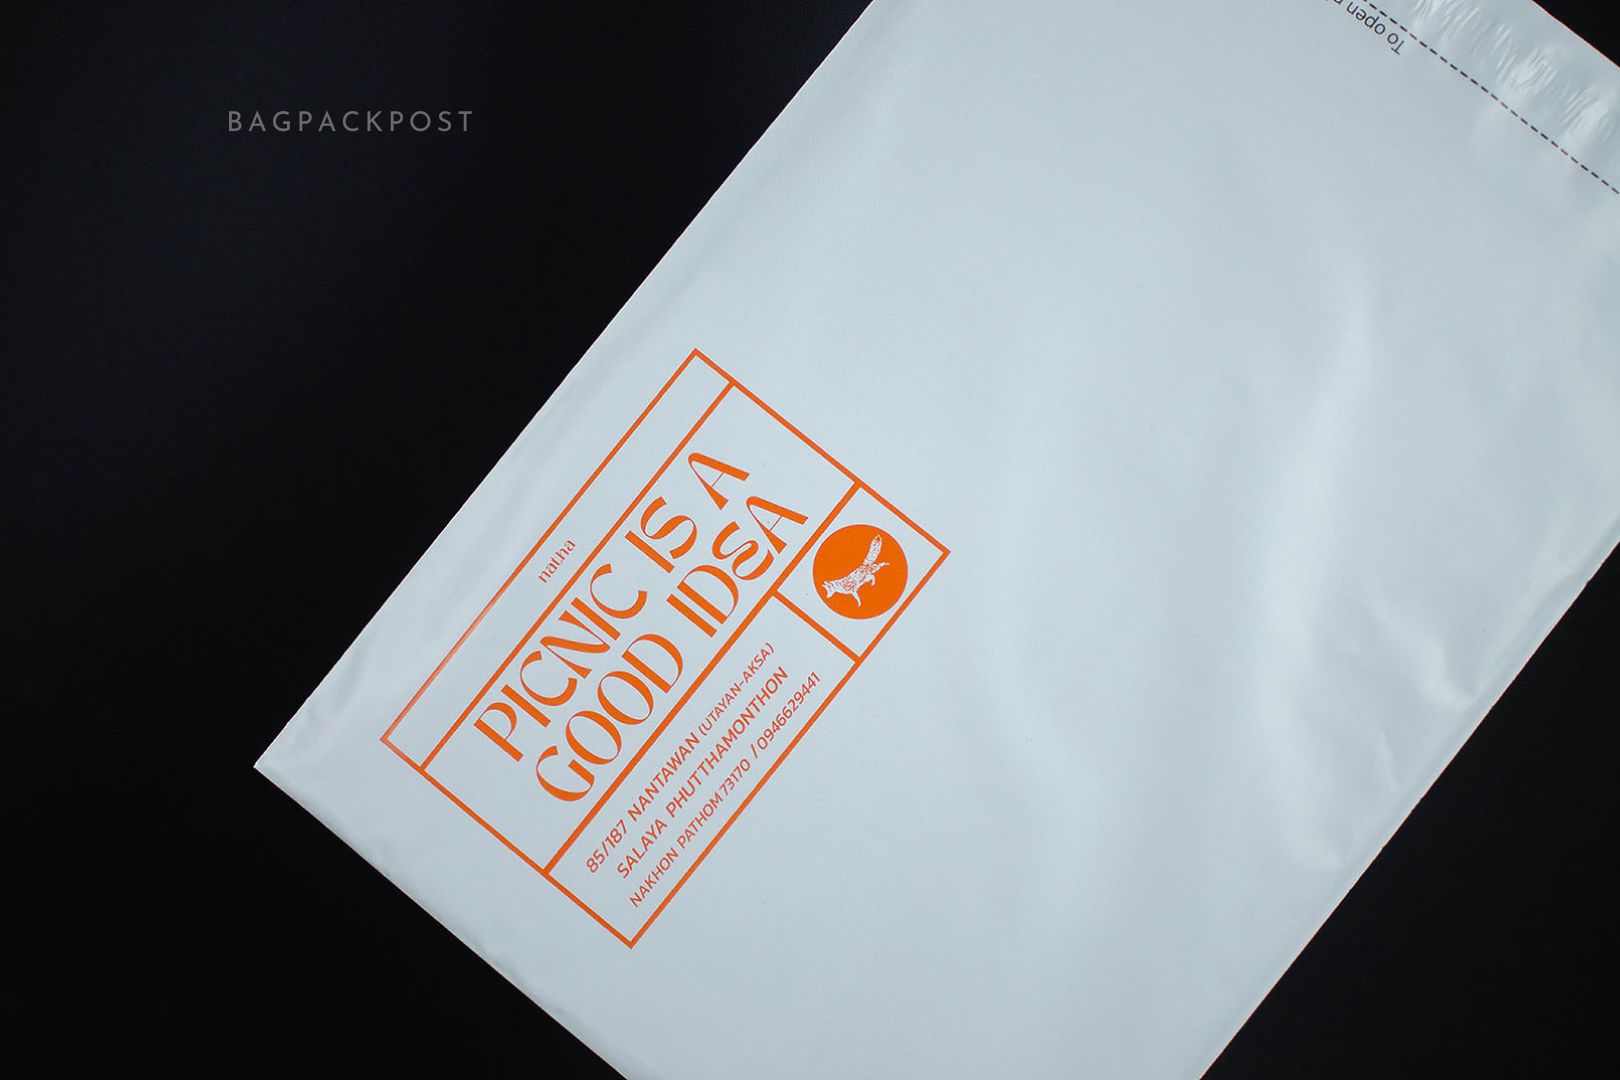 ซองไปรษณีย์พิมพ์ลาย Picnic is a Good Idea ซองไปรษณีย์สีขาว ถุงไปรษณีย์พิมพ์ลาย 3 BagPackPost